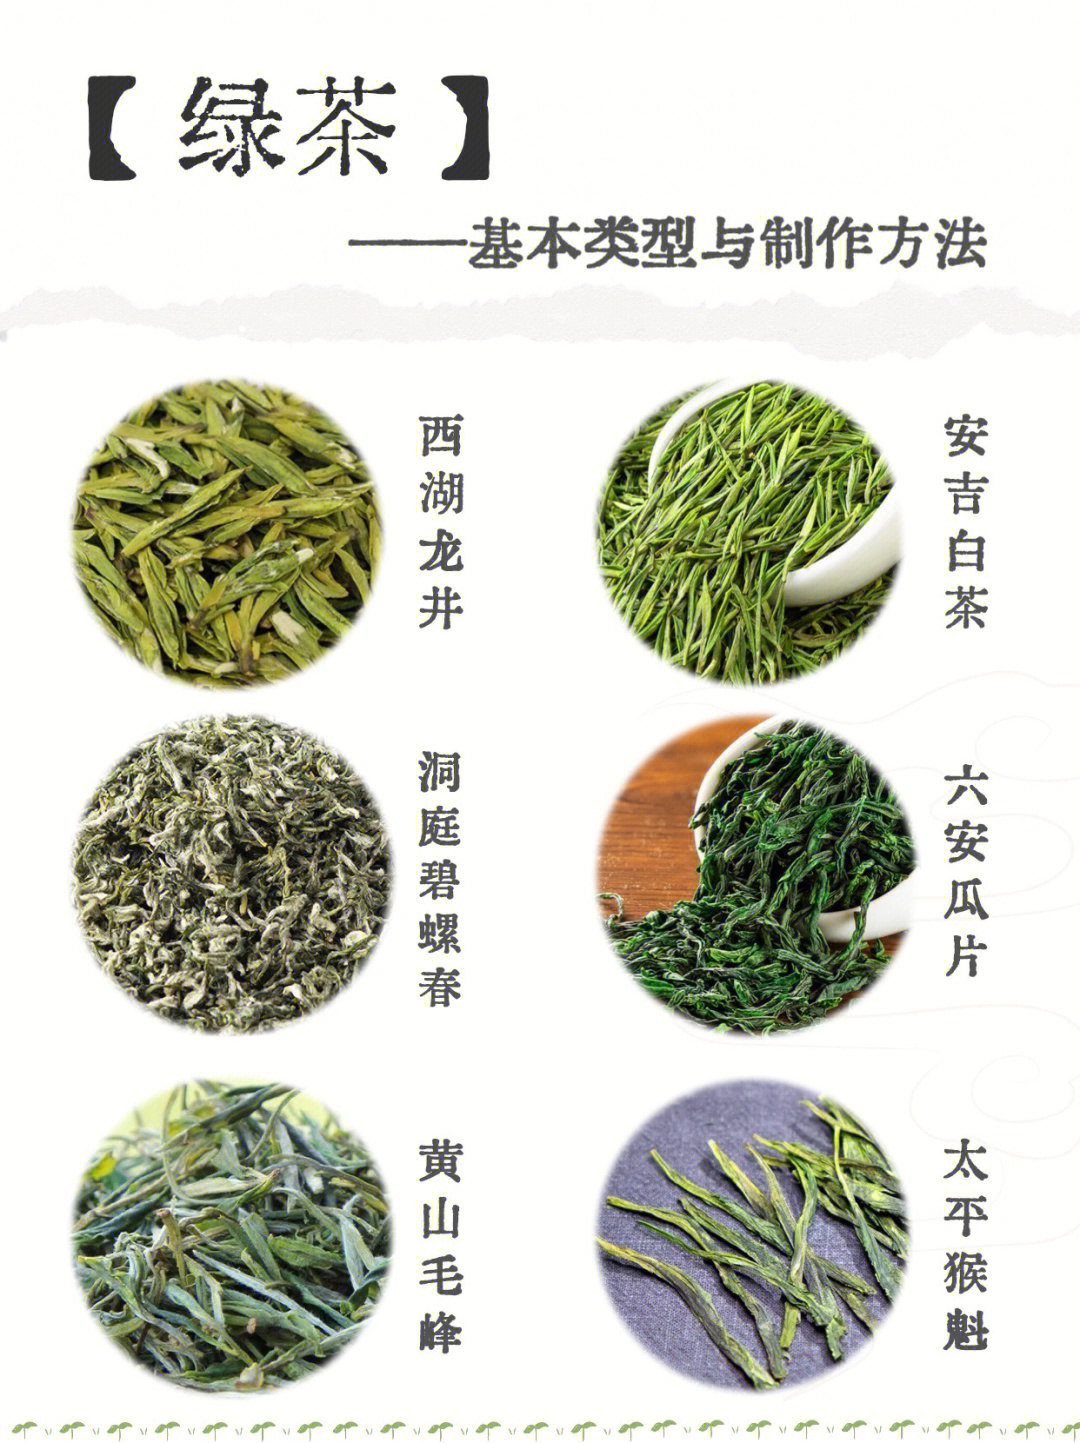 95【绿茶初制加工工艺与品质特点】绿茶是一种不发酵茶类,由采摘来